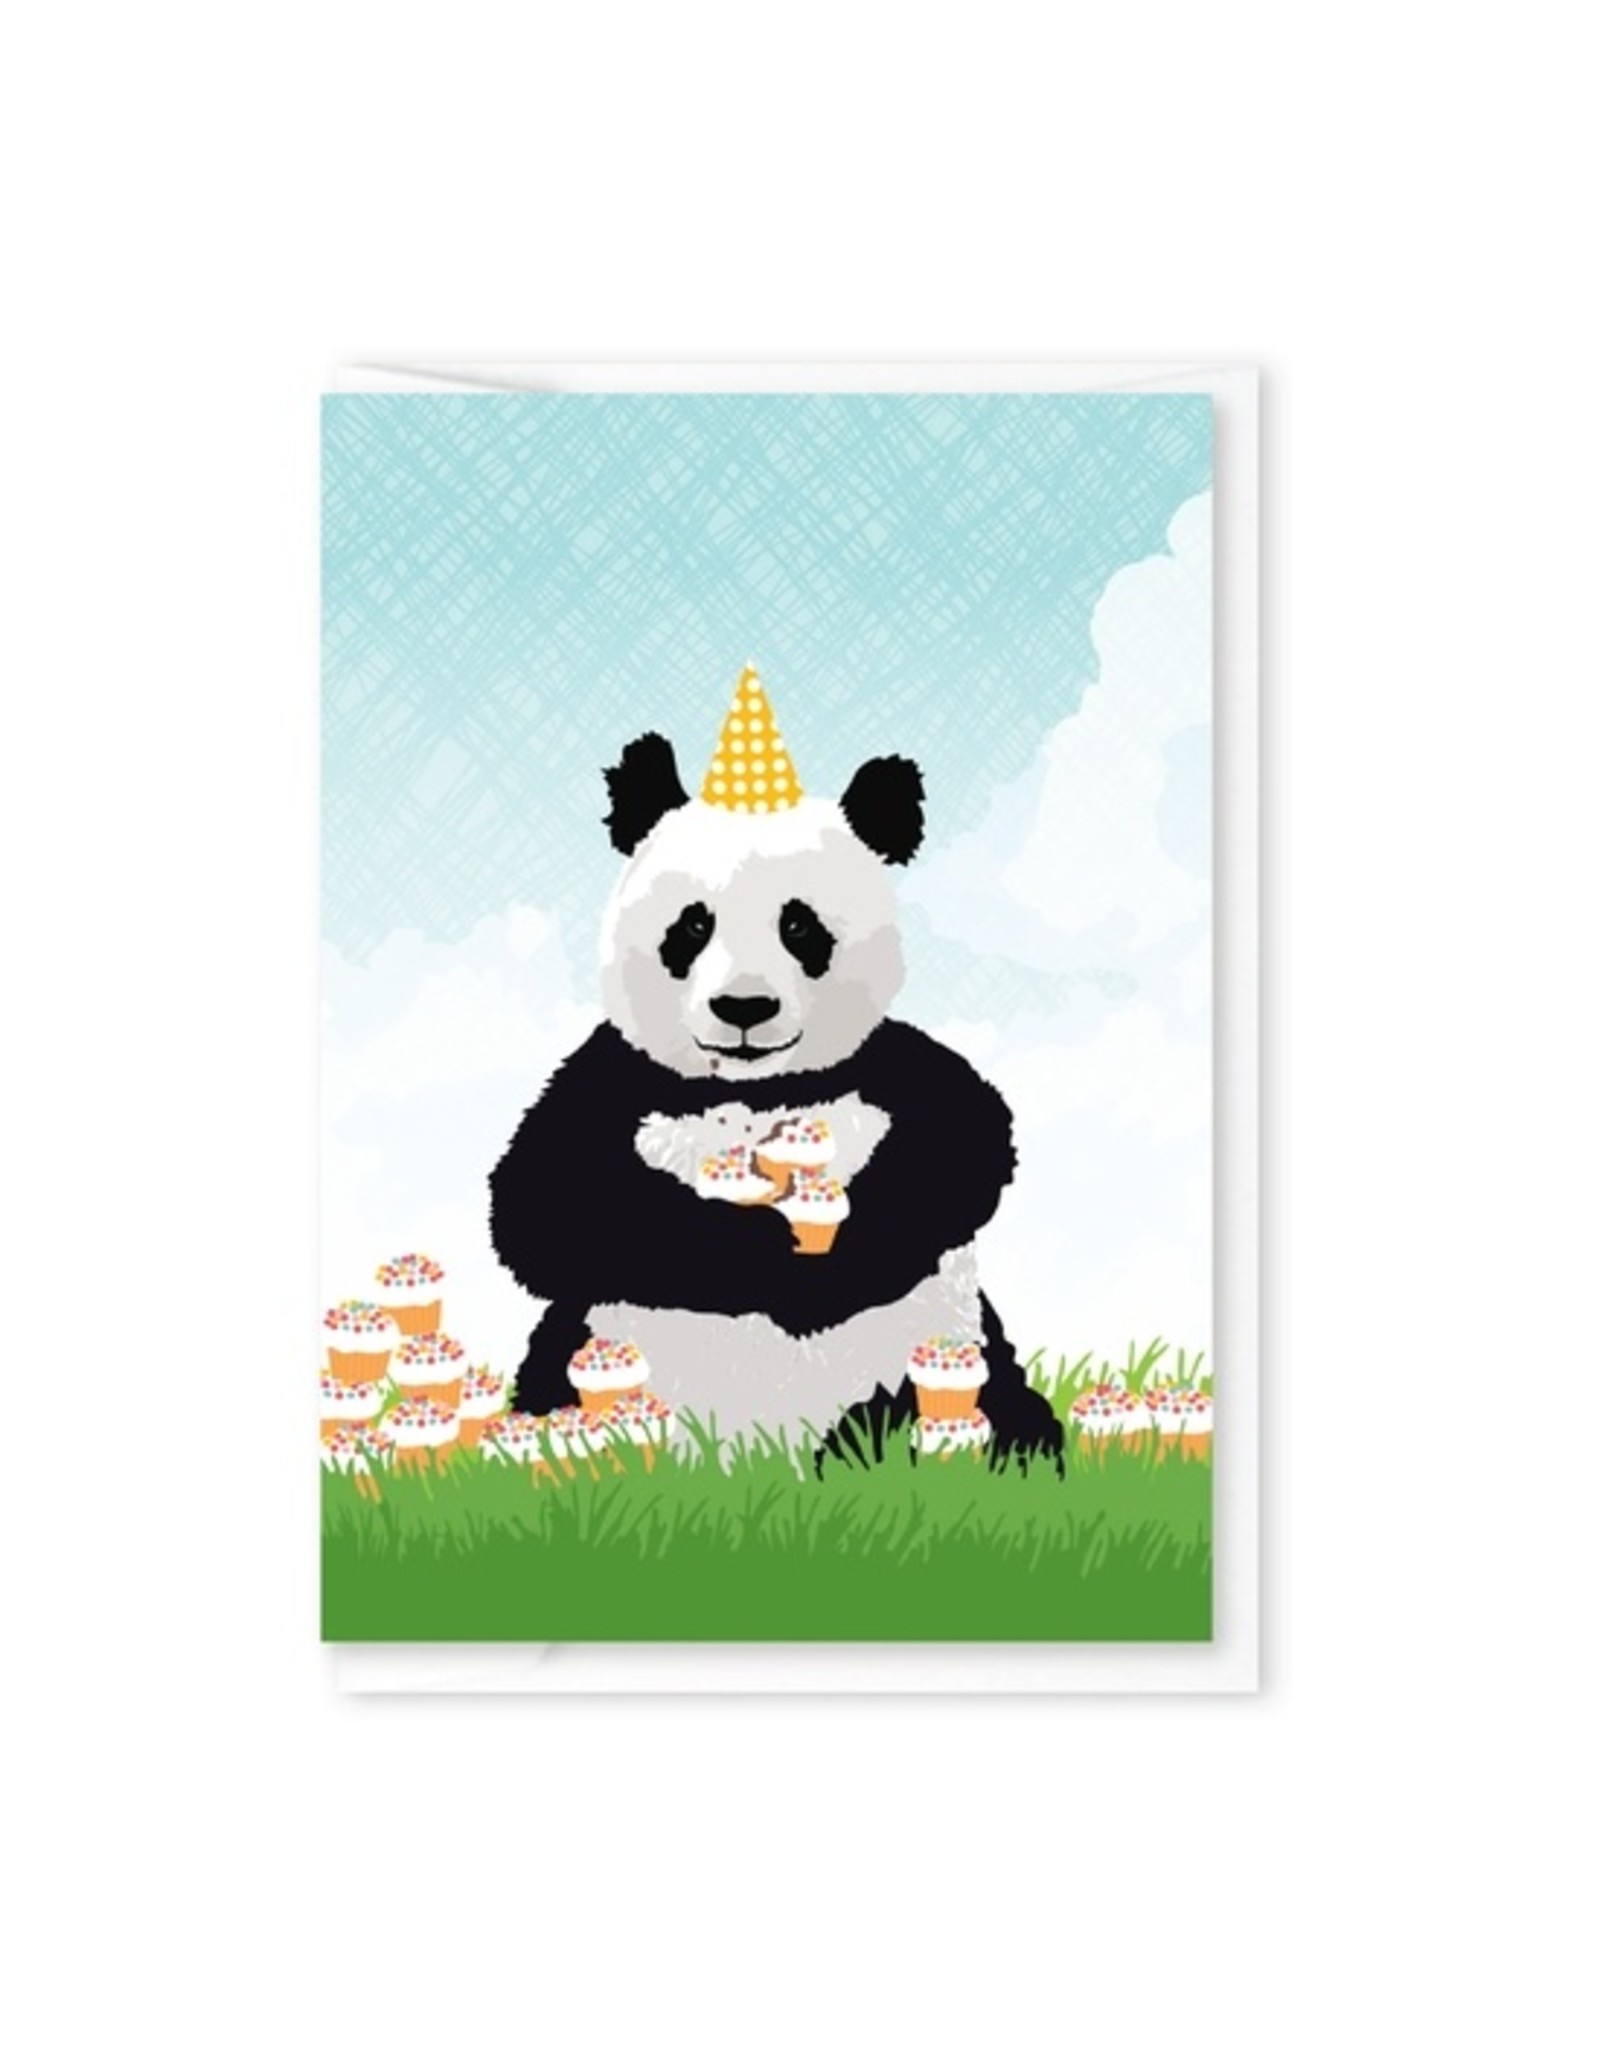 Modern Printed Matter Panda Cupcakes Enclosure Card